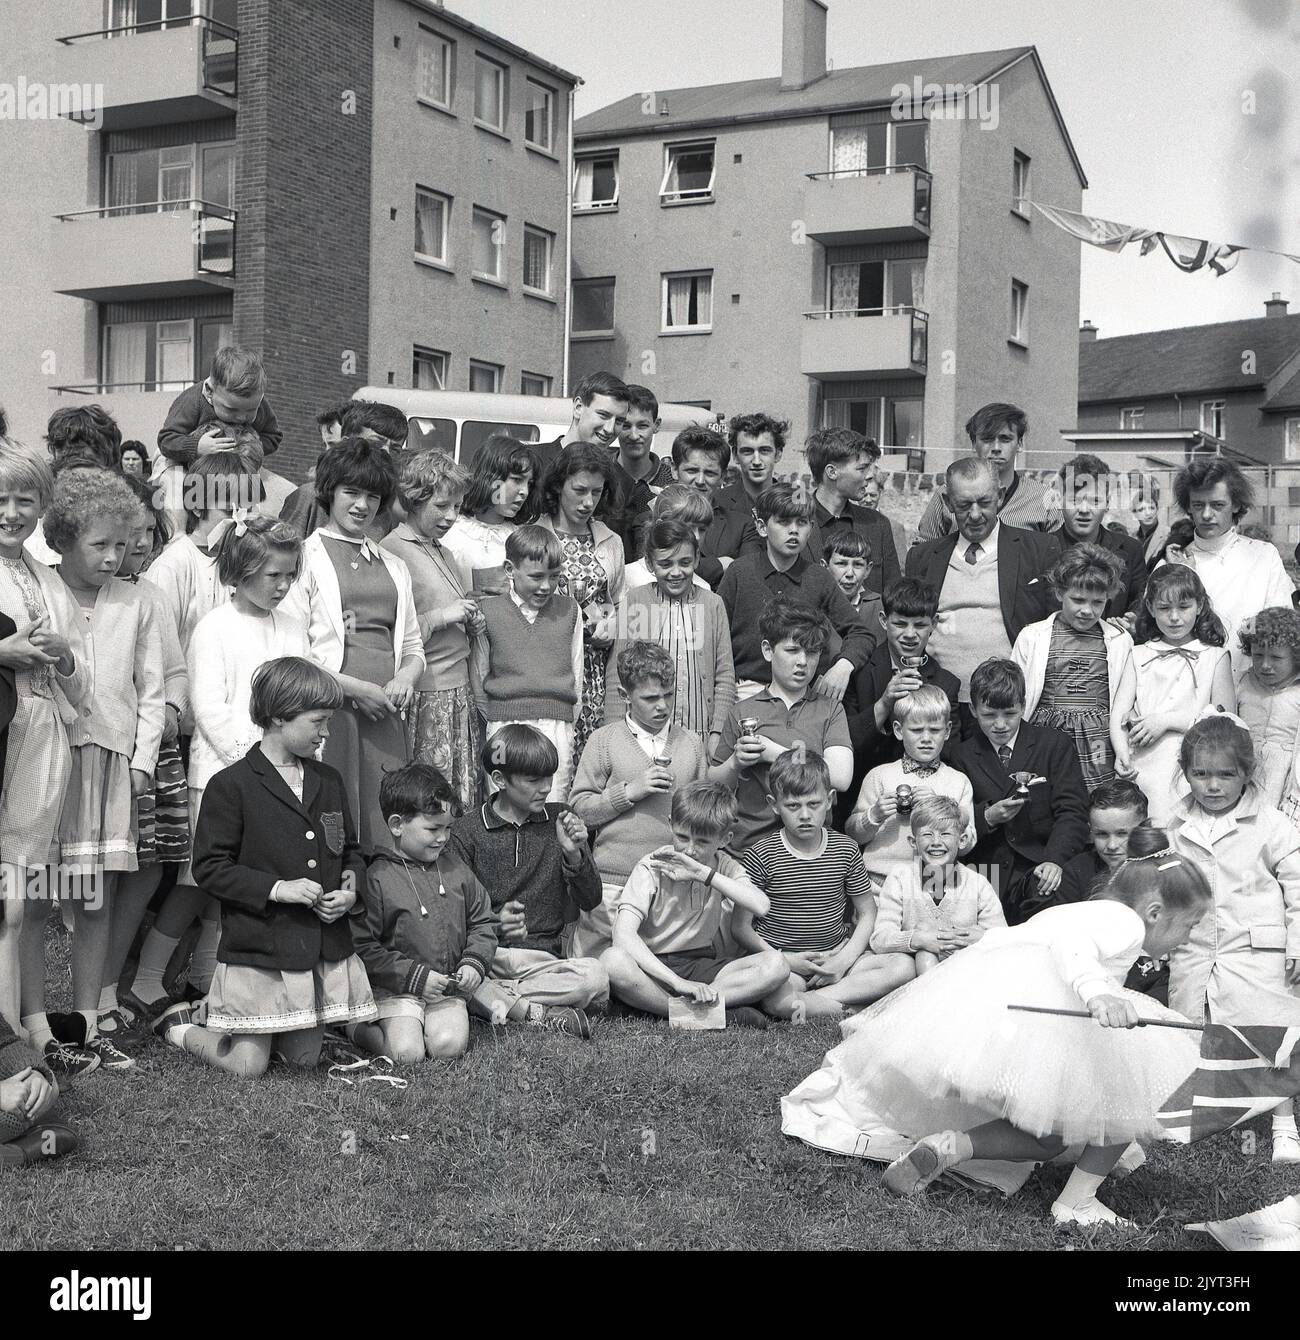 1965, historique, les enfants et les adultes se sont réunis pour une photo de groupe, certains tenant des trophées miniatures, après avoir pris part à la journée de gala du North Queensferry, une journée communautaire pour les résidents du domaine, North Queensferry, Fife, Écosse, Royaume-Uni. Banque D'Images